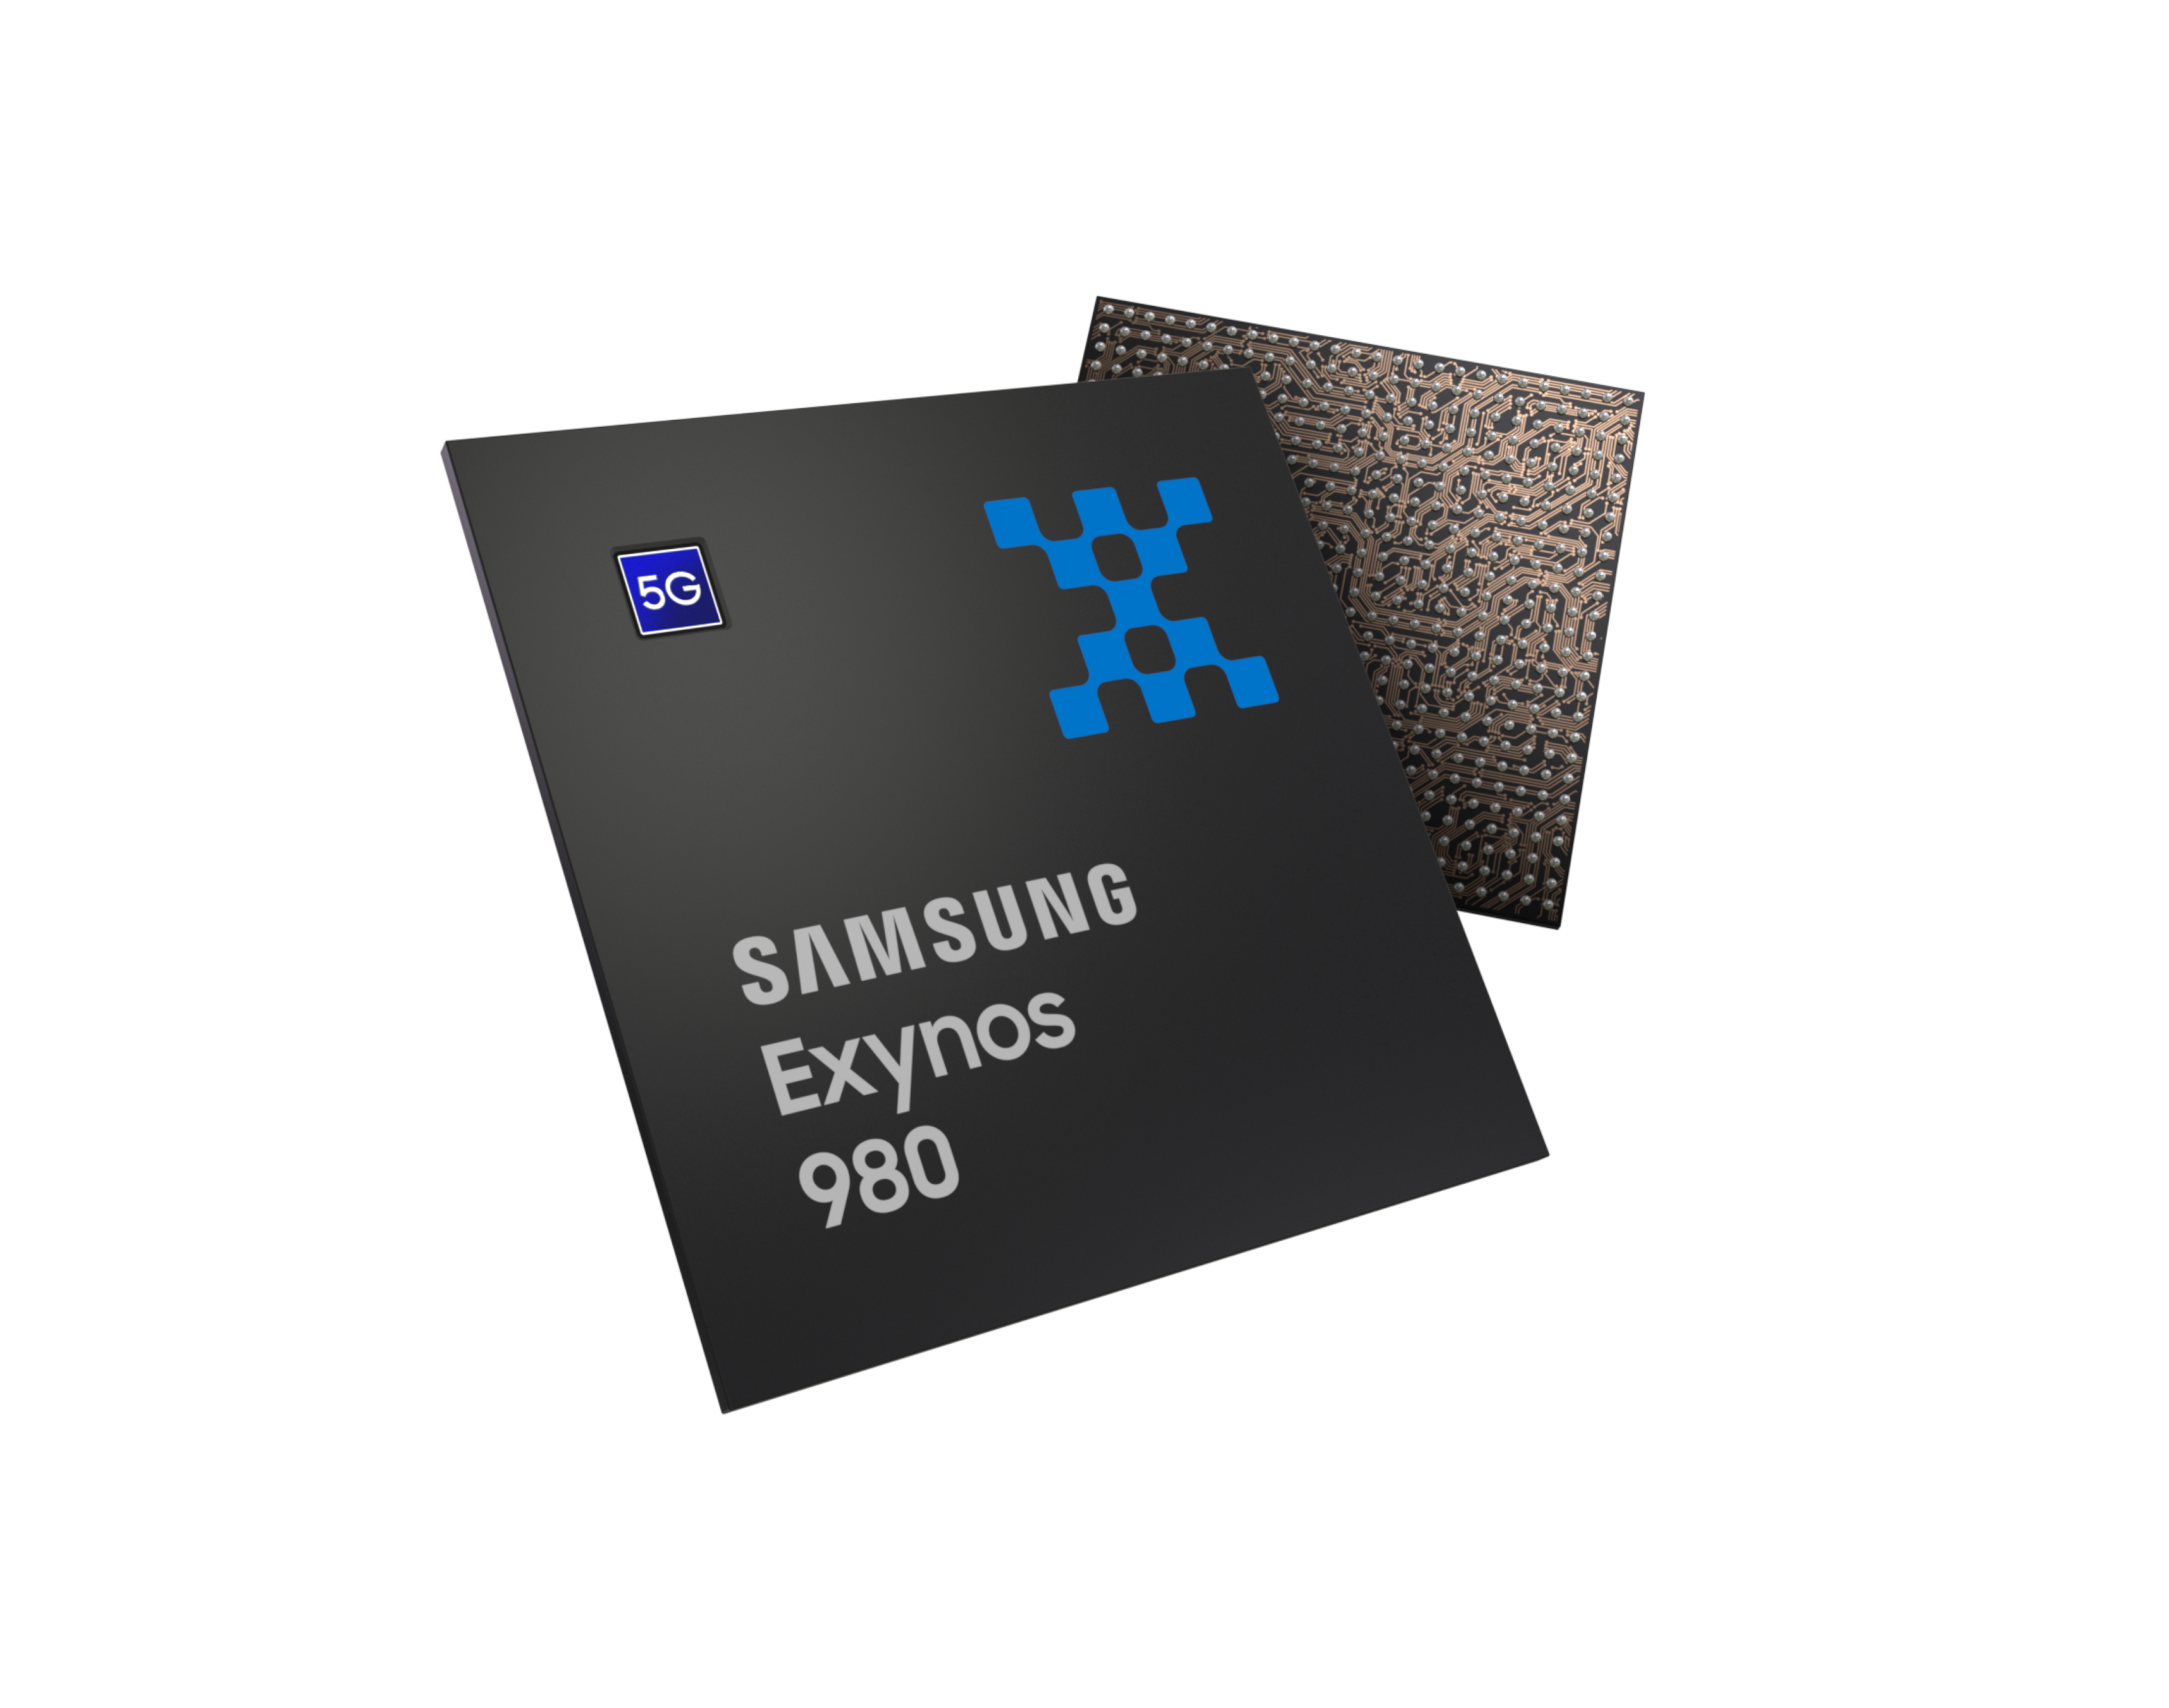 Samsung Exynos 980 SoC